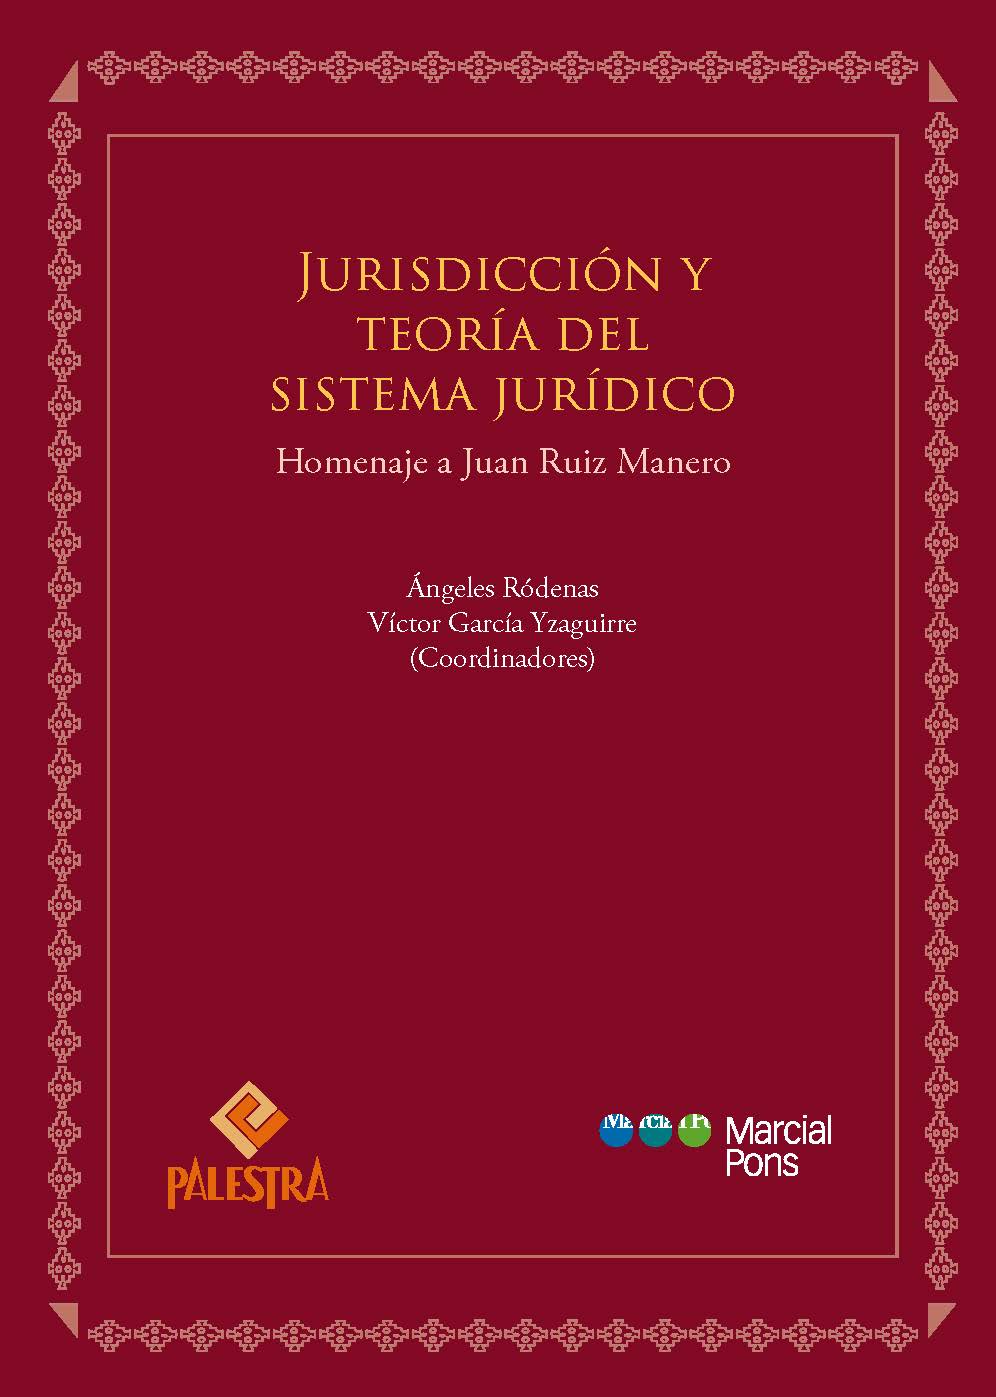 Imagen de portada del libro Jurisdicción y teoría del sistema jurídico